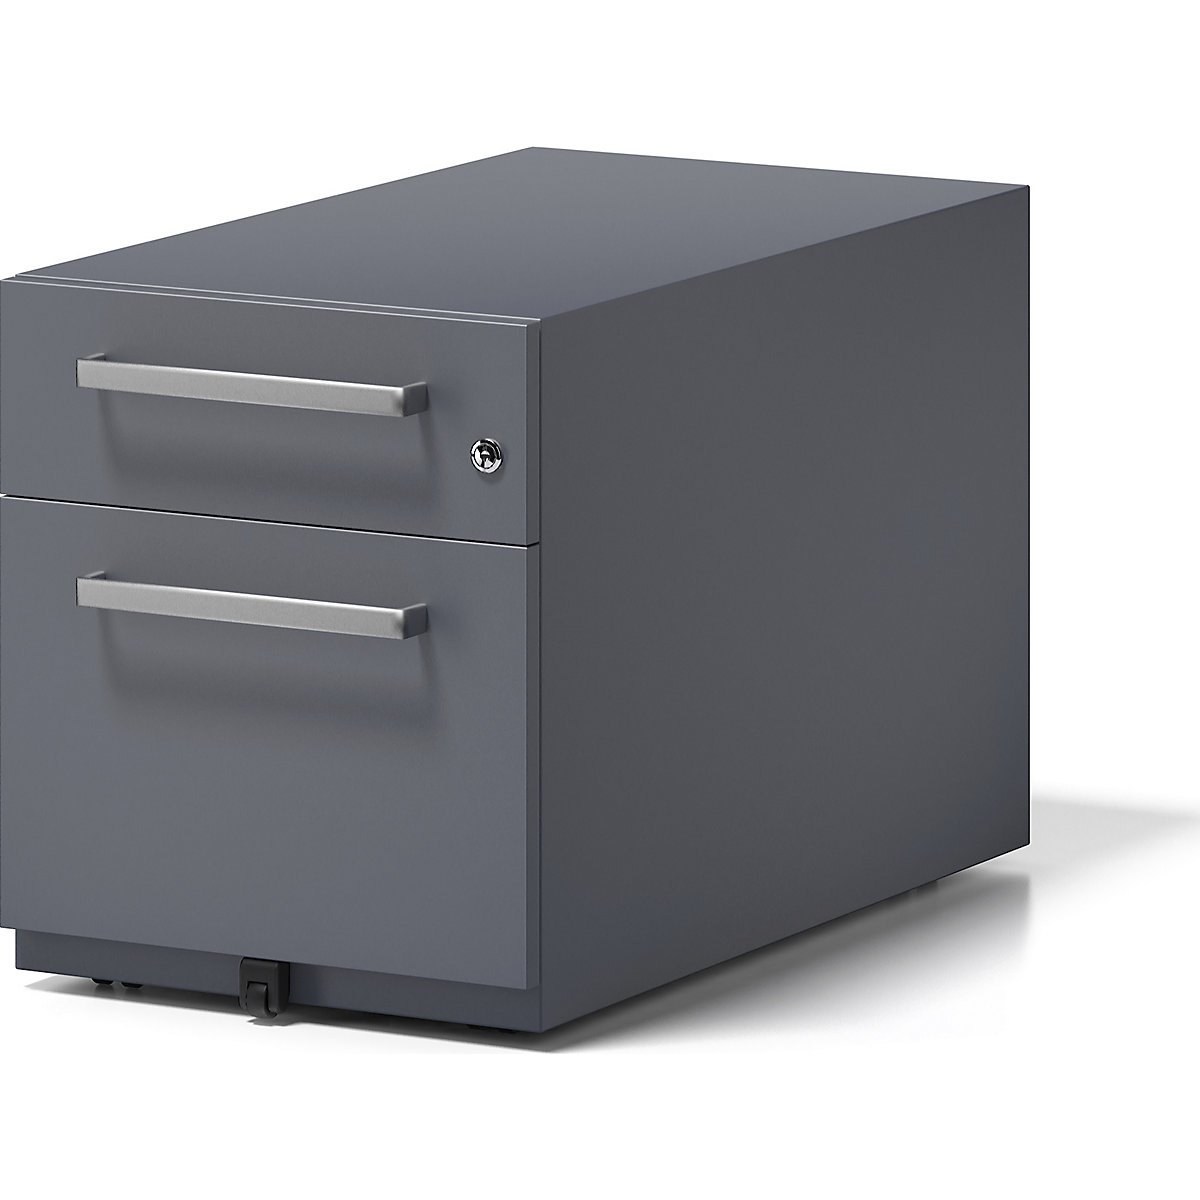 BISLEY – Buck rodante Note™ con 1 archivador colgante y 1 cajón universal, H x A x P 495 x 420 x 775 mm, con asa, gris antracita